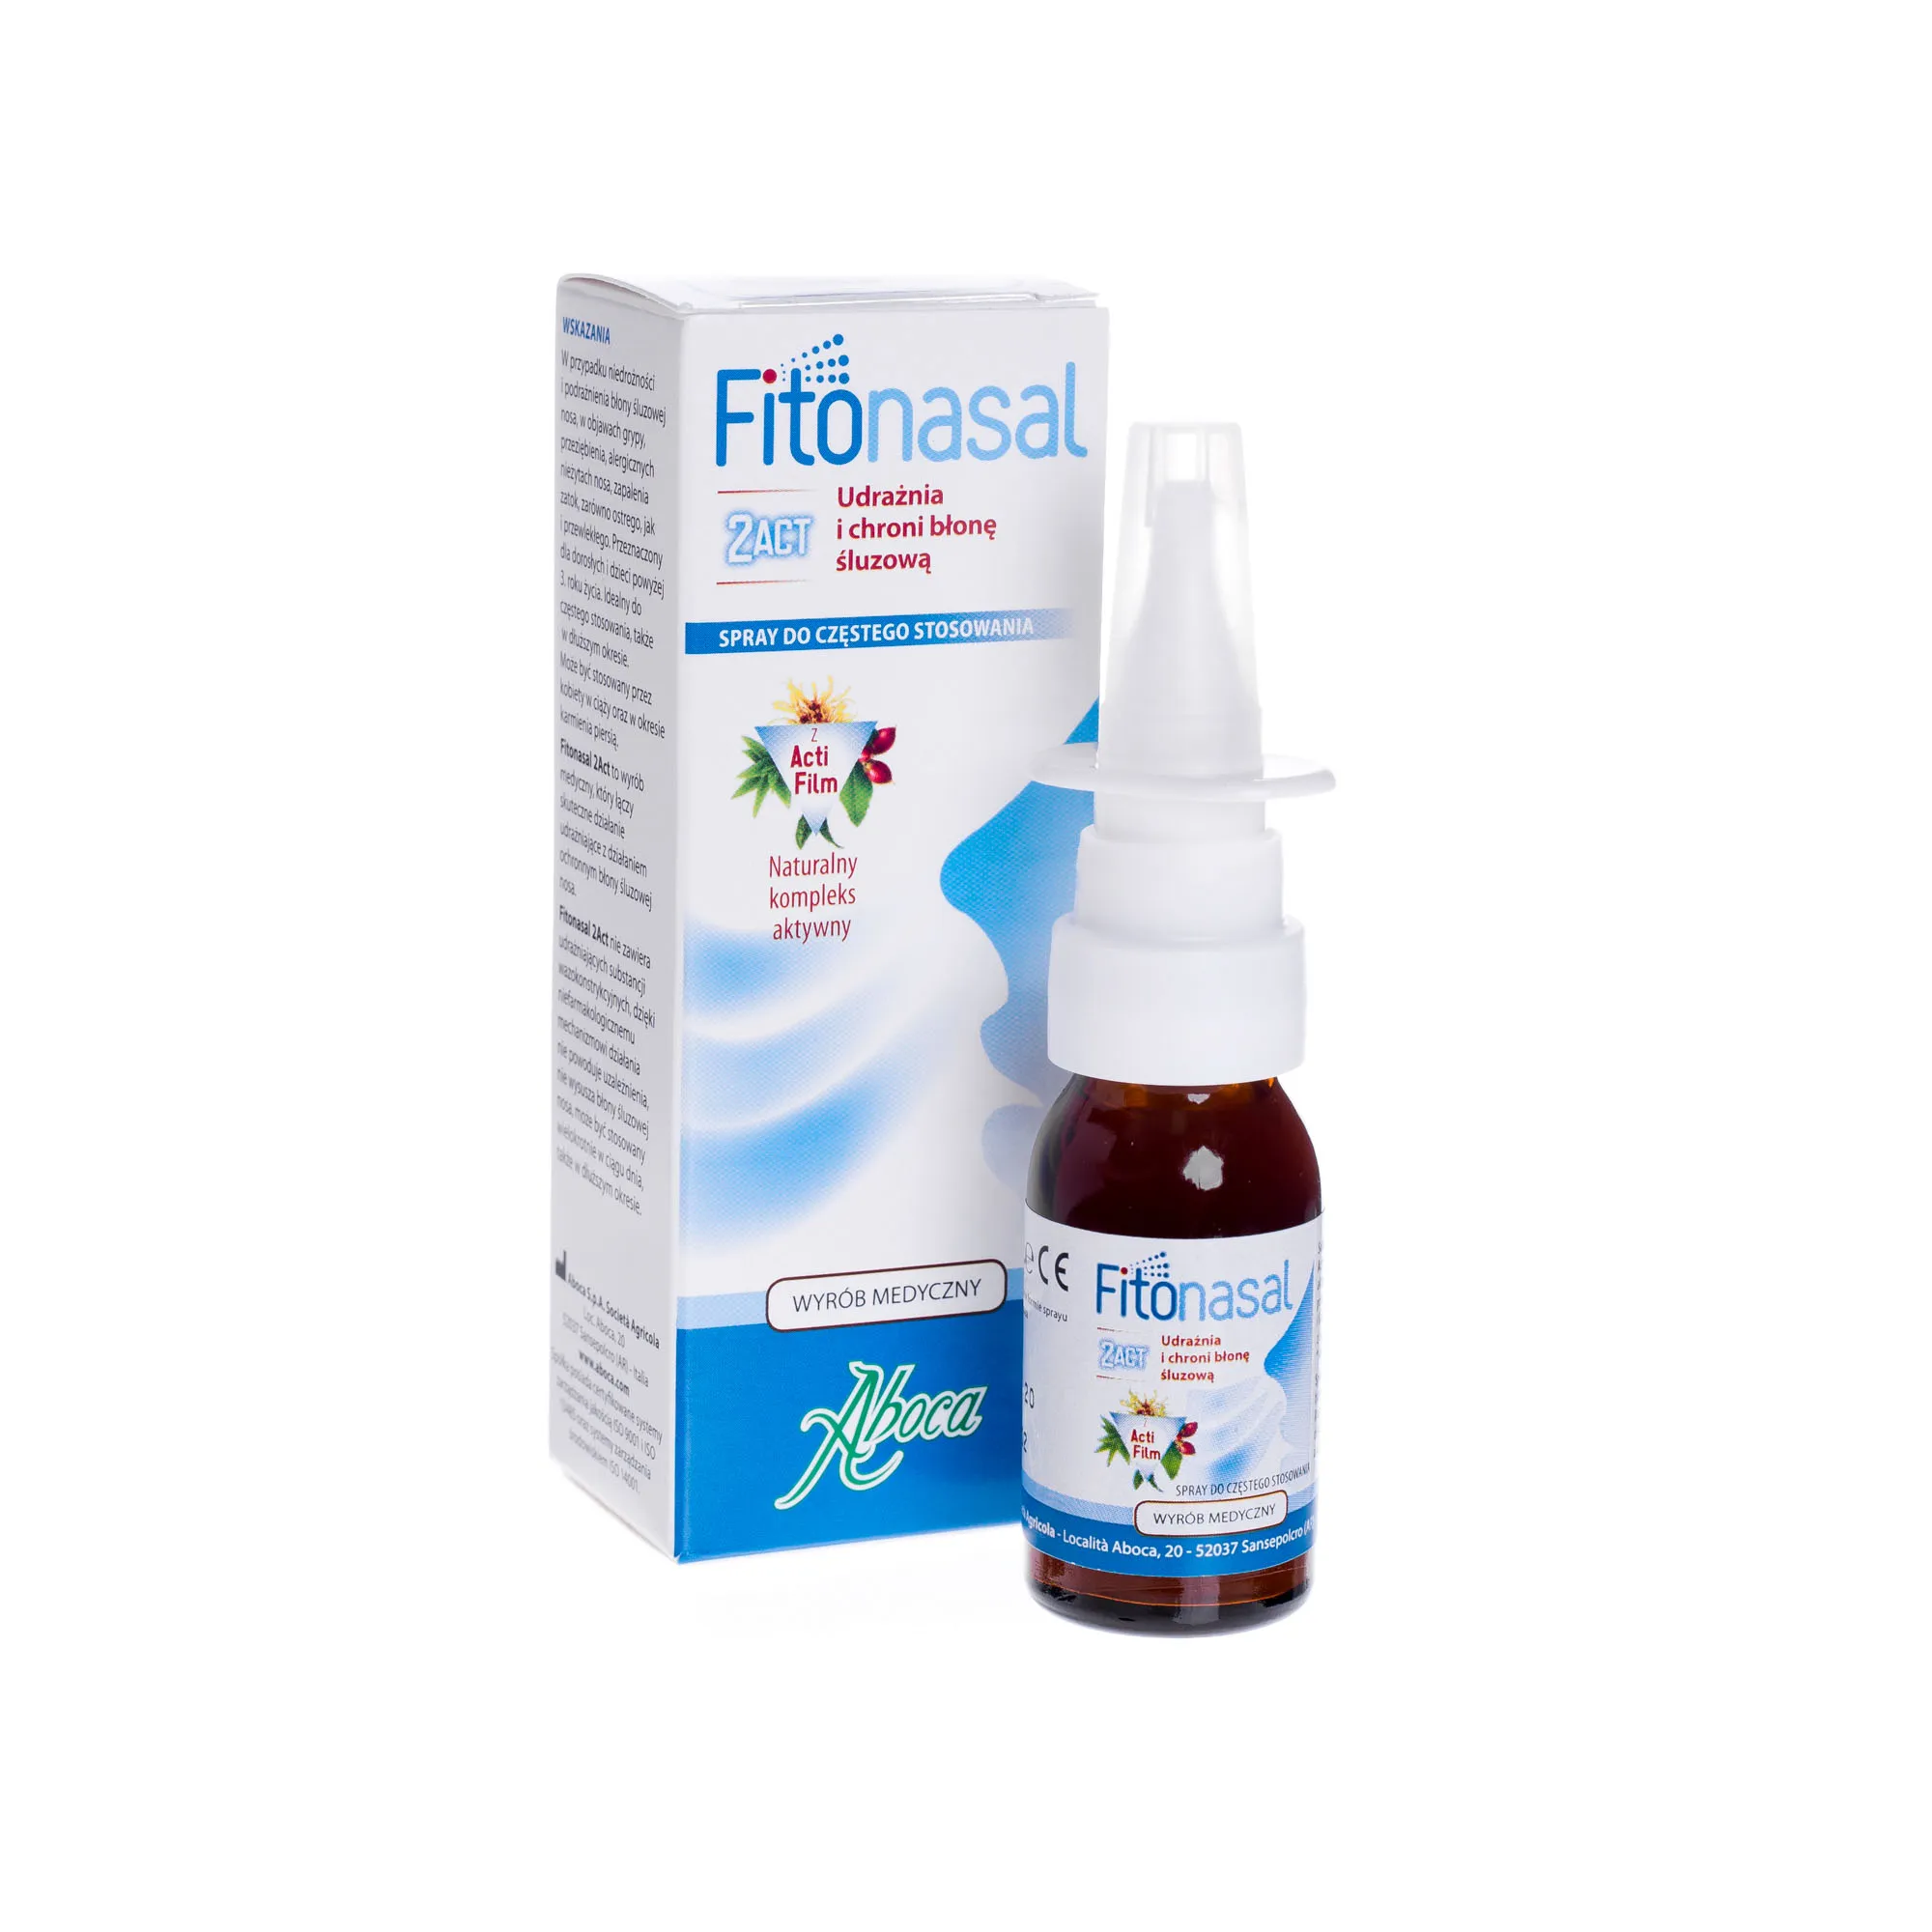 Fitonasal 2ACT, udrażnia i chroni błonę ślizową, 15 ml